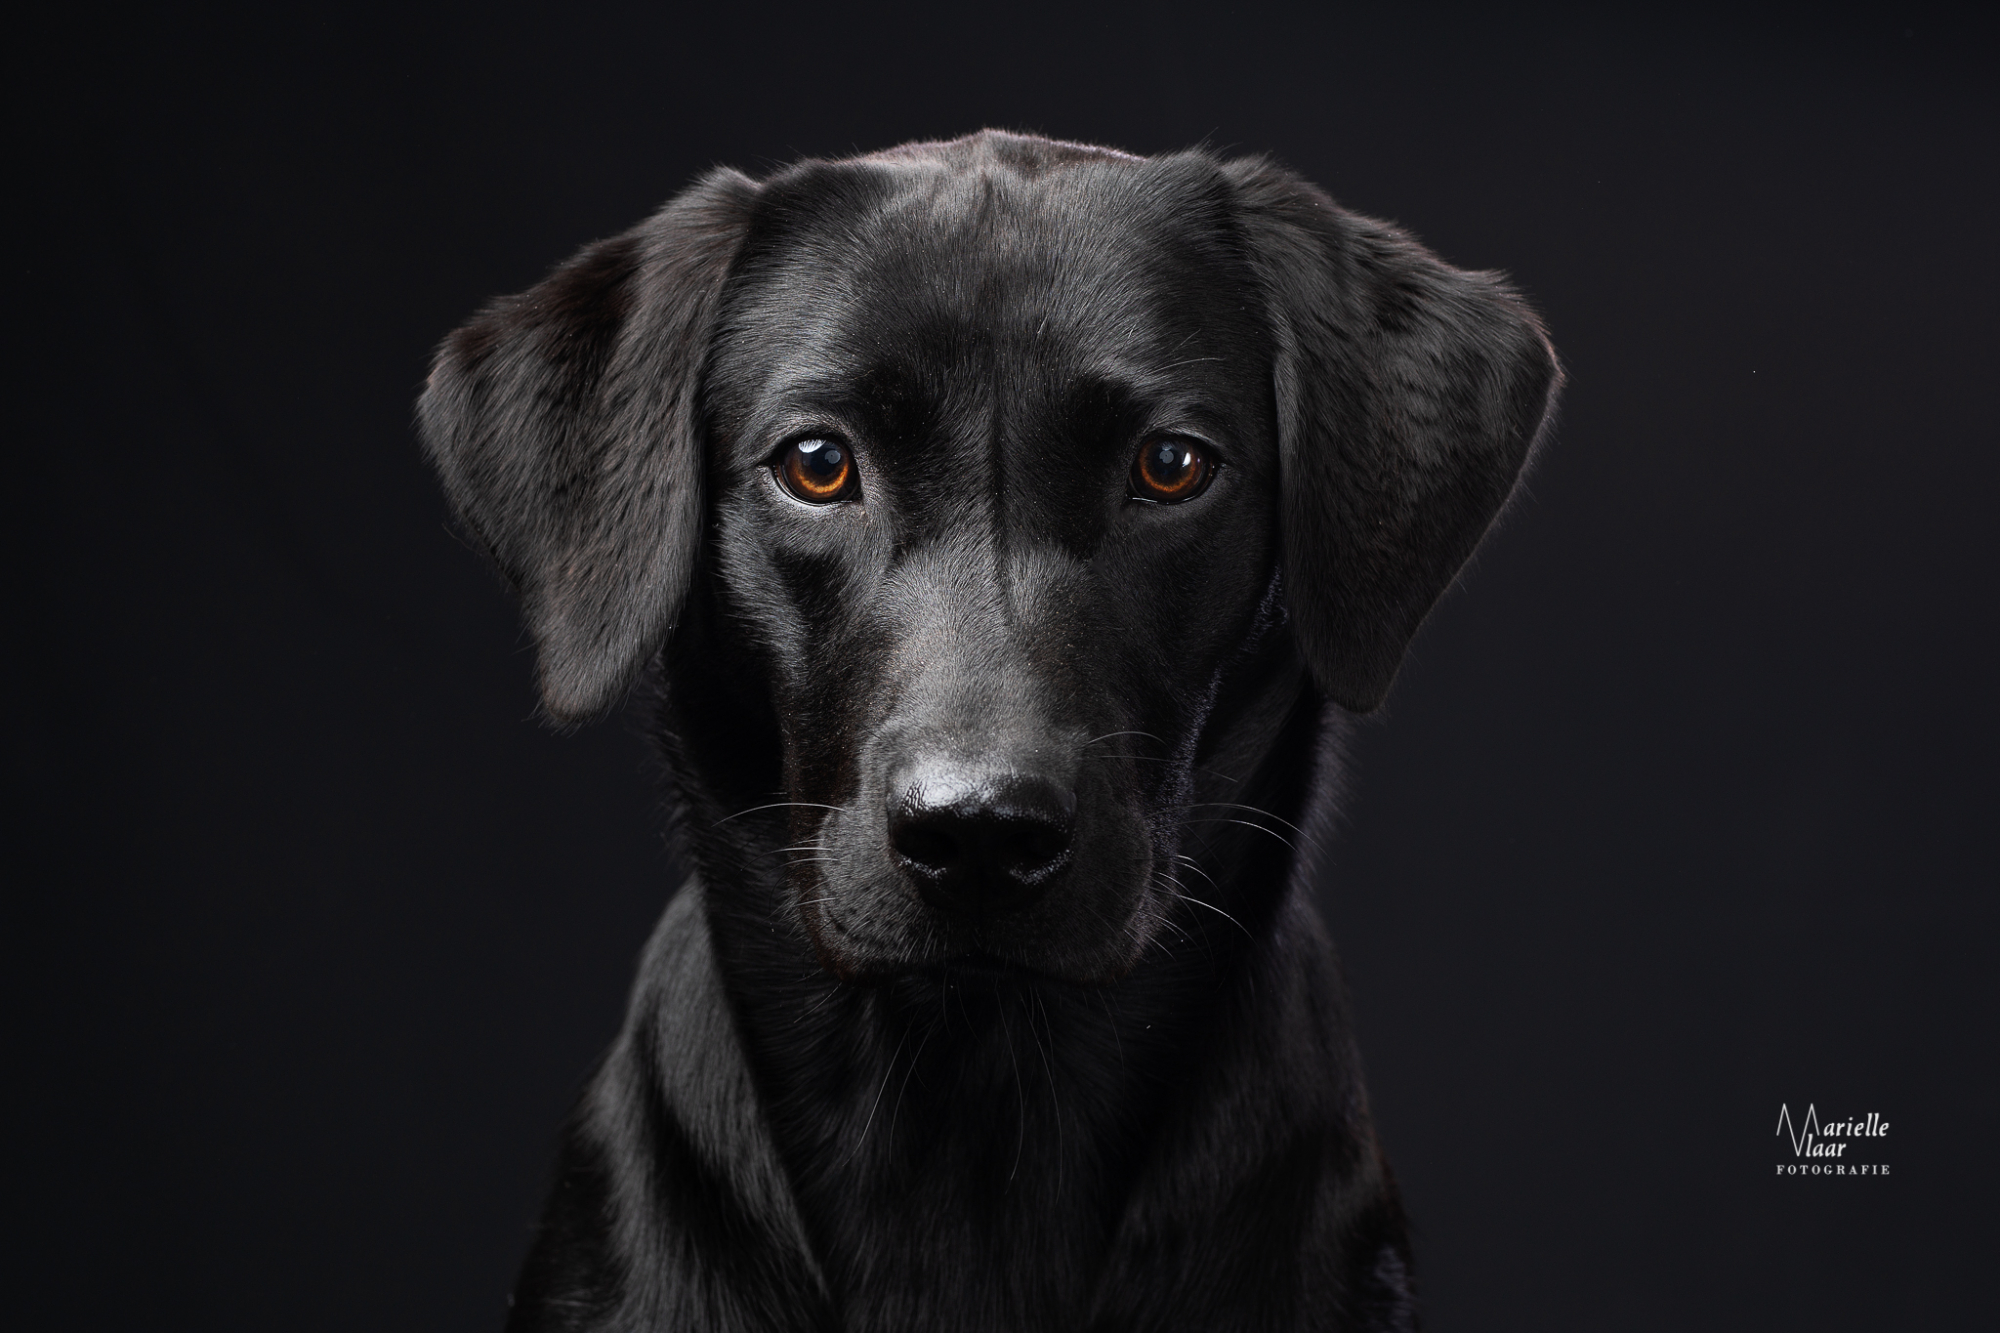 Klassiek portret hond, hondenfotografie studio, zwarte labrador met zwarte achtergrond fotograaf